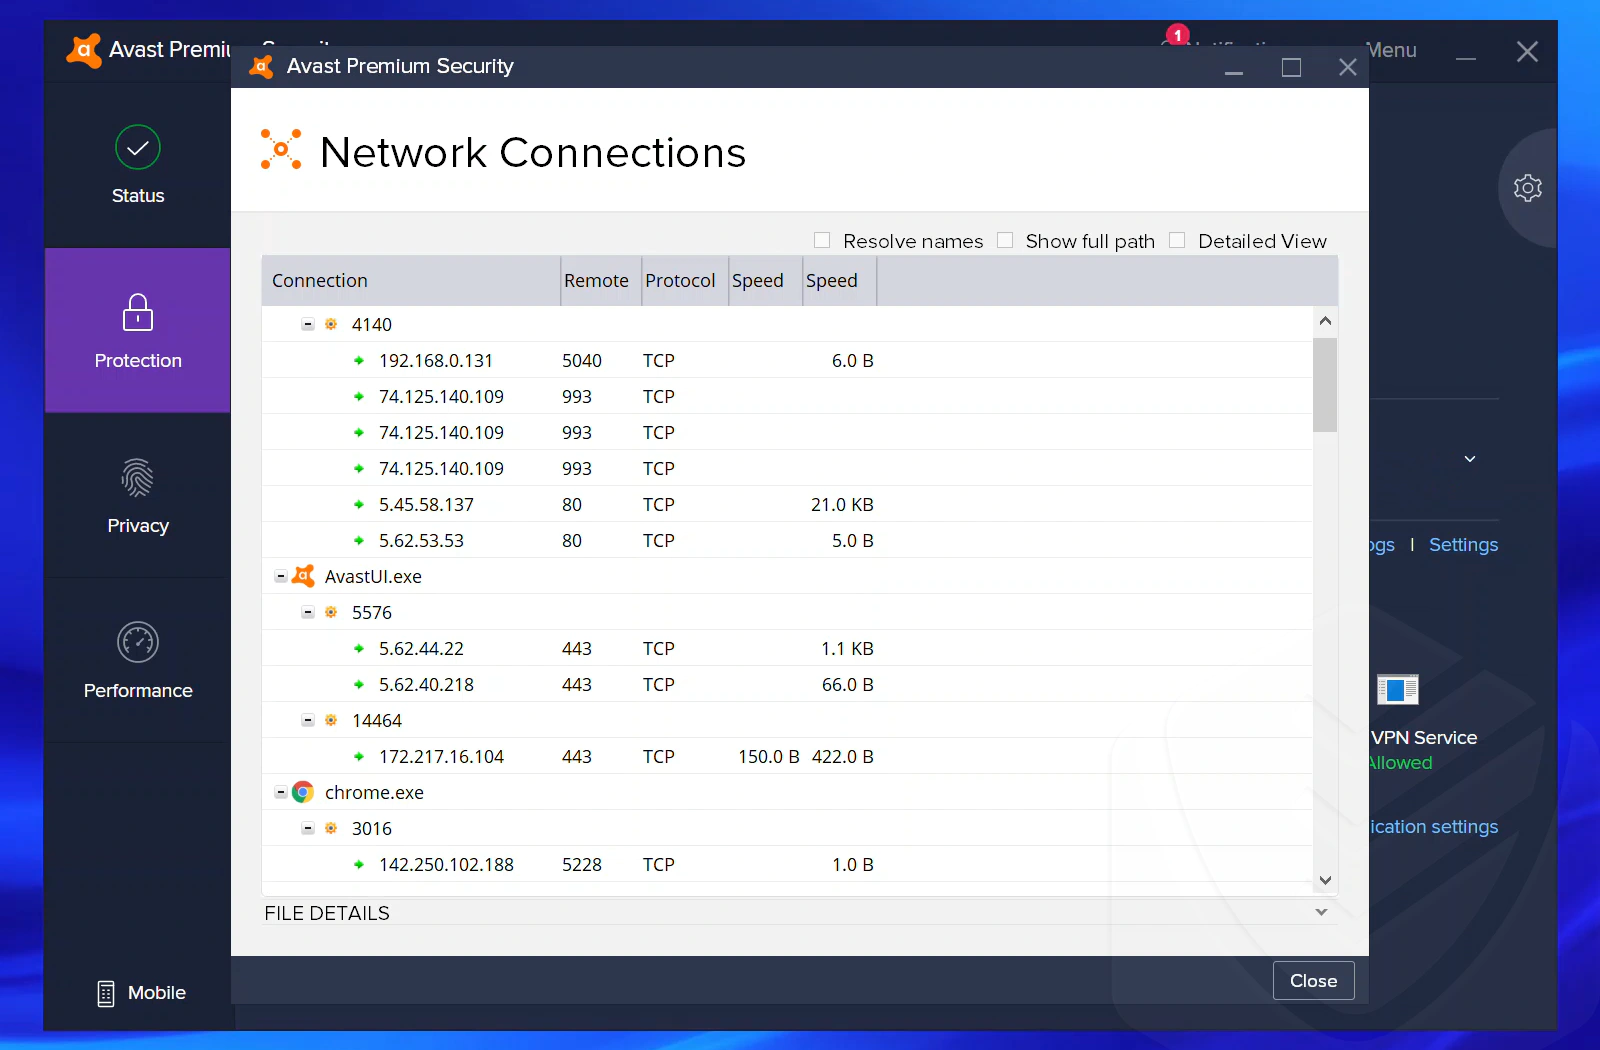 
Configuración de las conexiones de red de Avast